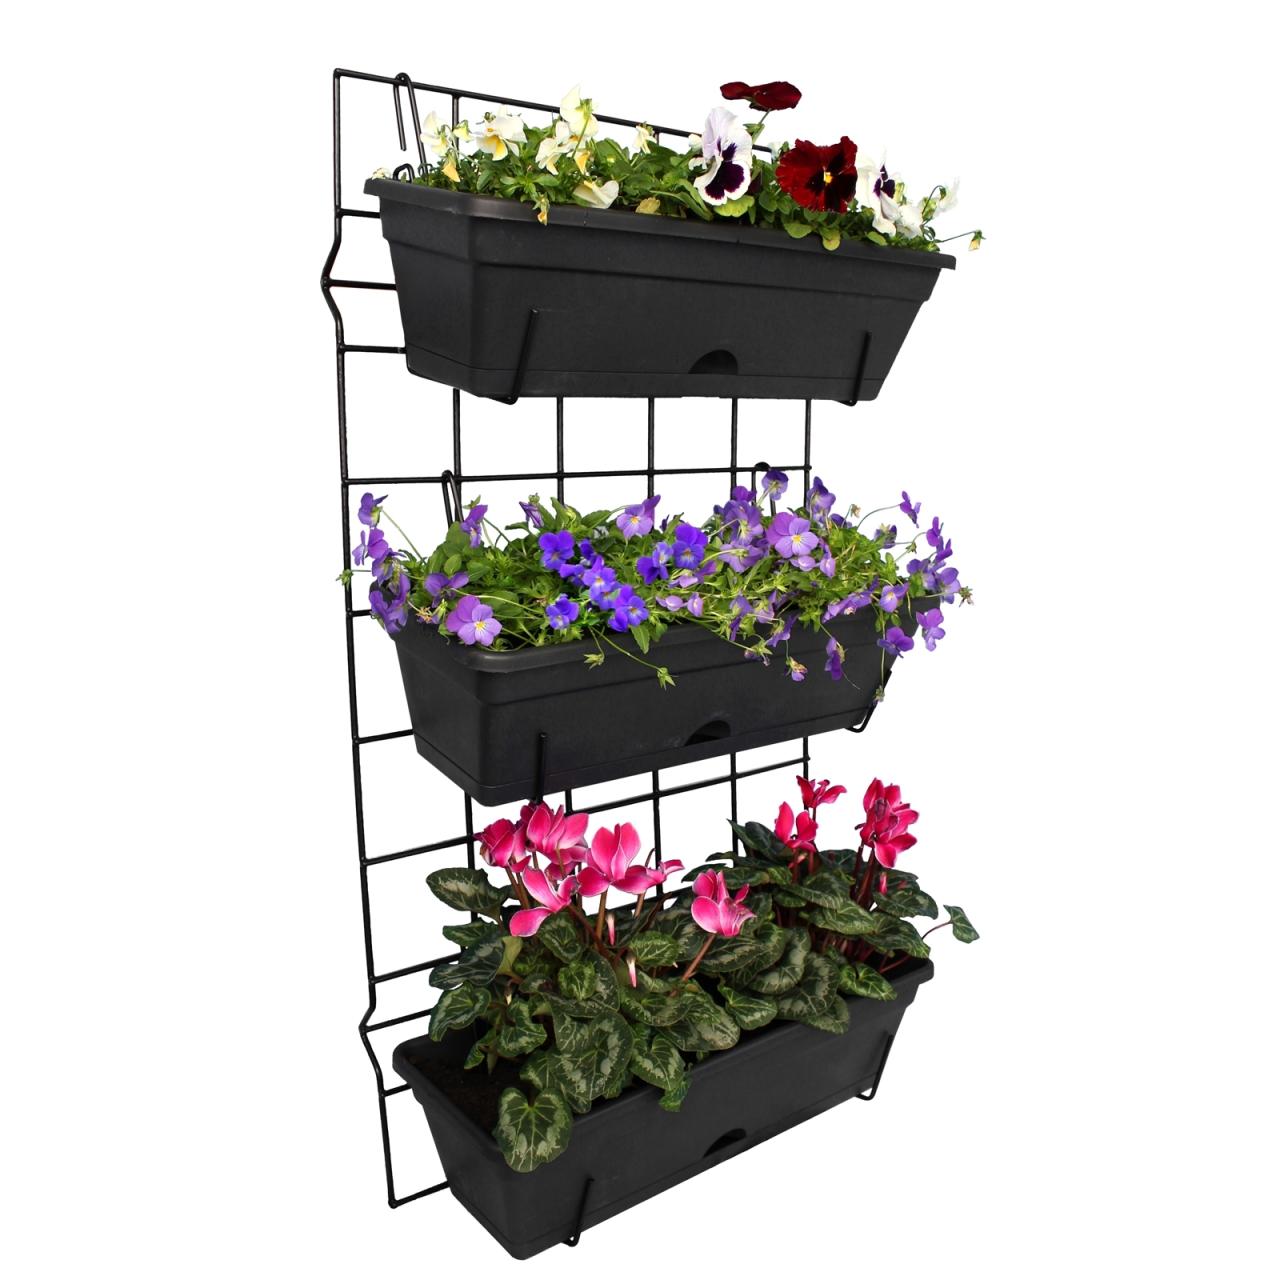 Hanging Plants Indoor | Bunnings Hanging Herb Garden: A Comprehensive Guide to Vertical Gardening